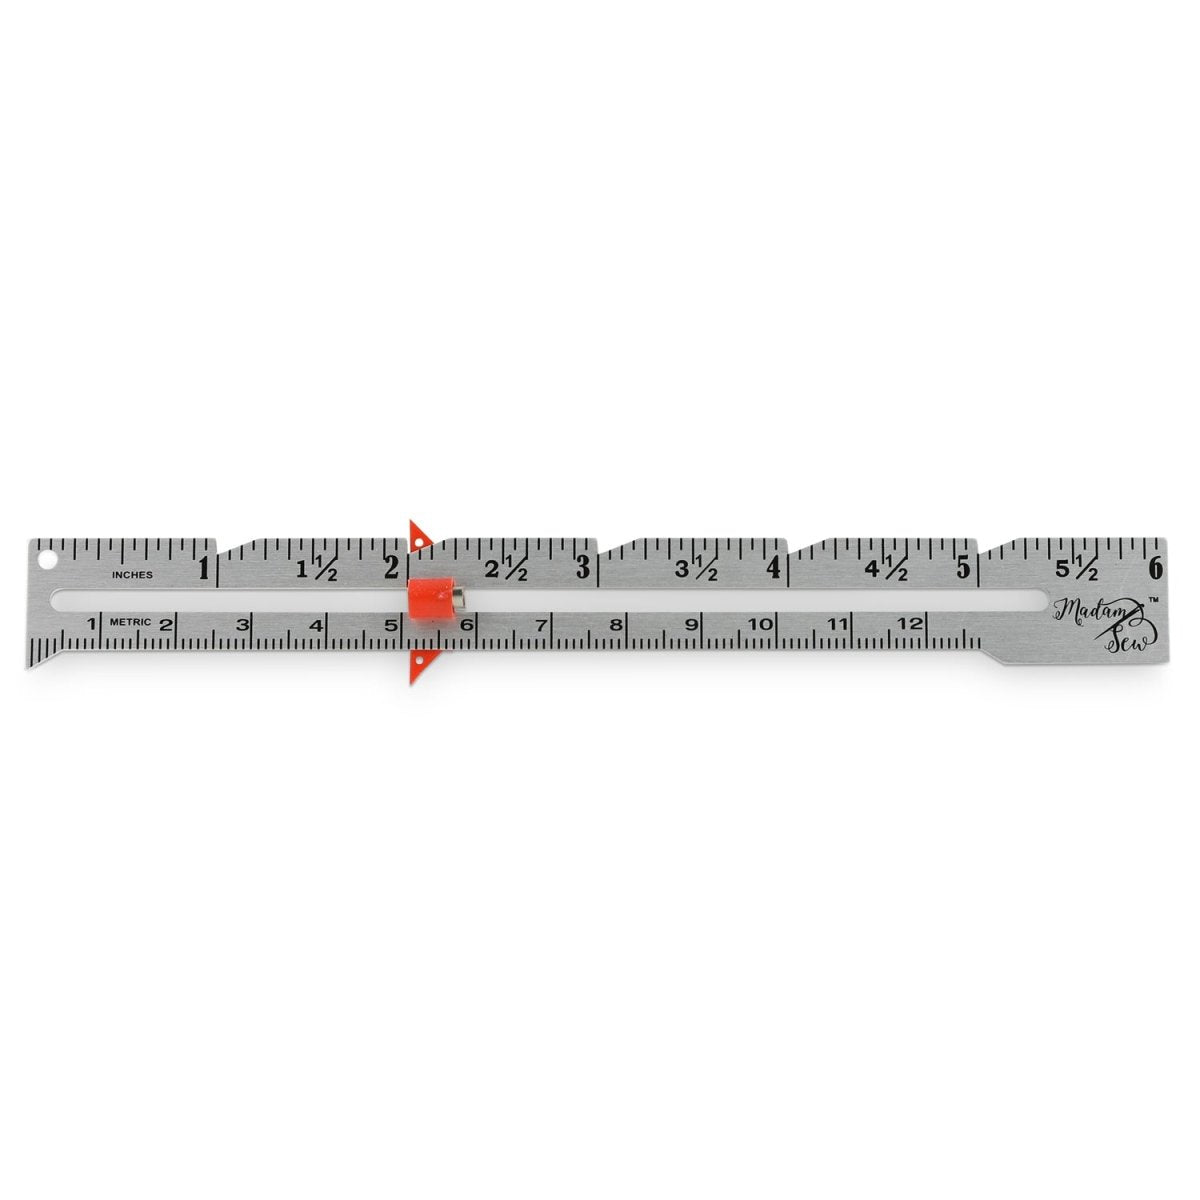 Metric Sewing Rulers Measure Tool Patchwork Tailor Rulers Set DIY